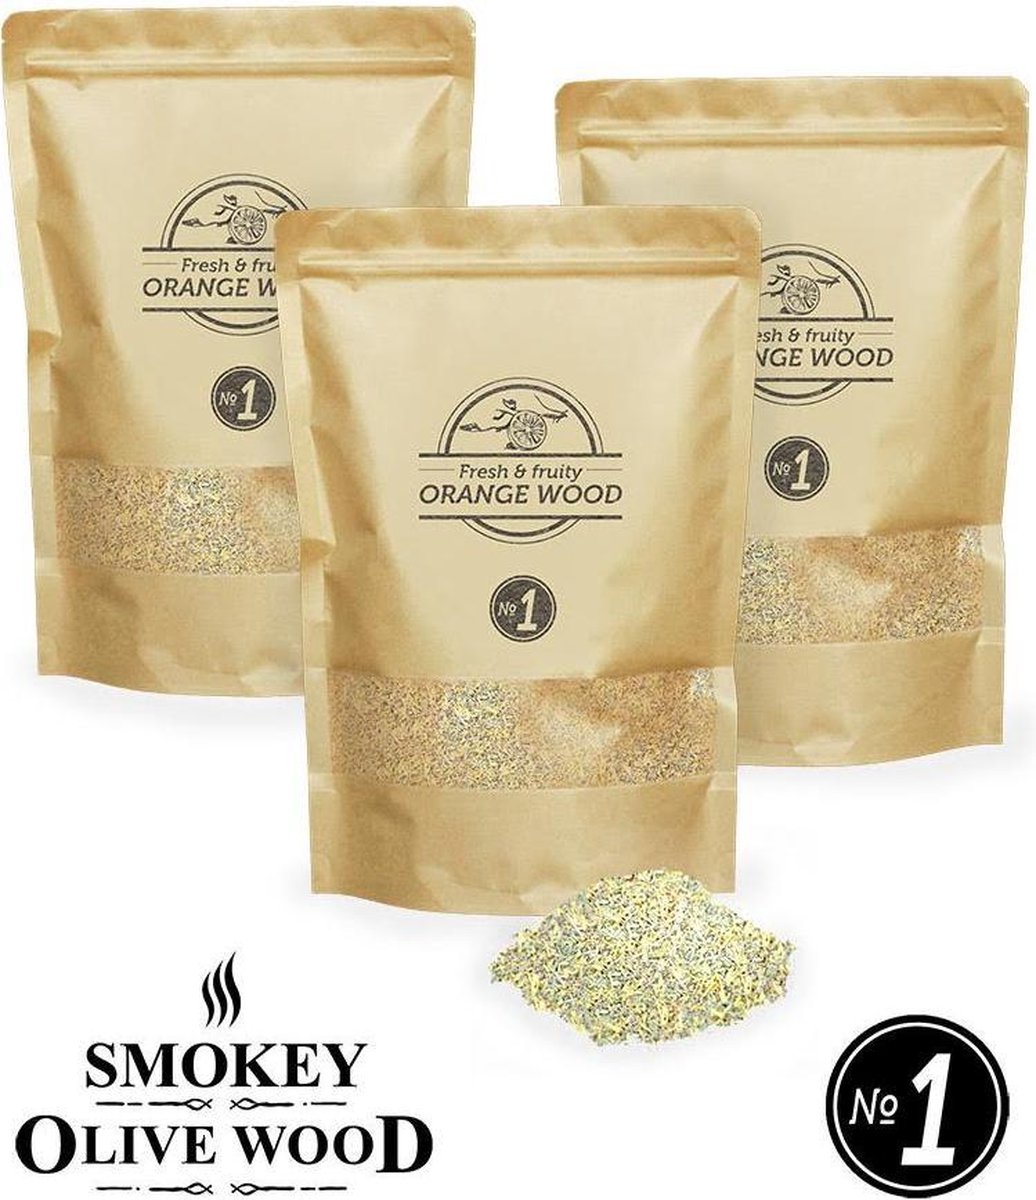 Smokey Olive Wood - Rookmot - 3x 1,5L, SINAASAPPELHOUT - Rookmeel fijn ø 0-1mm - Smokey Olive Wood